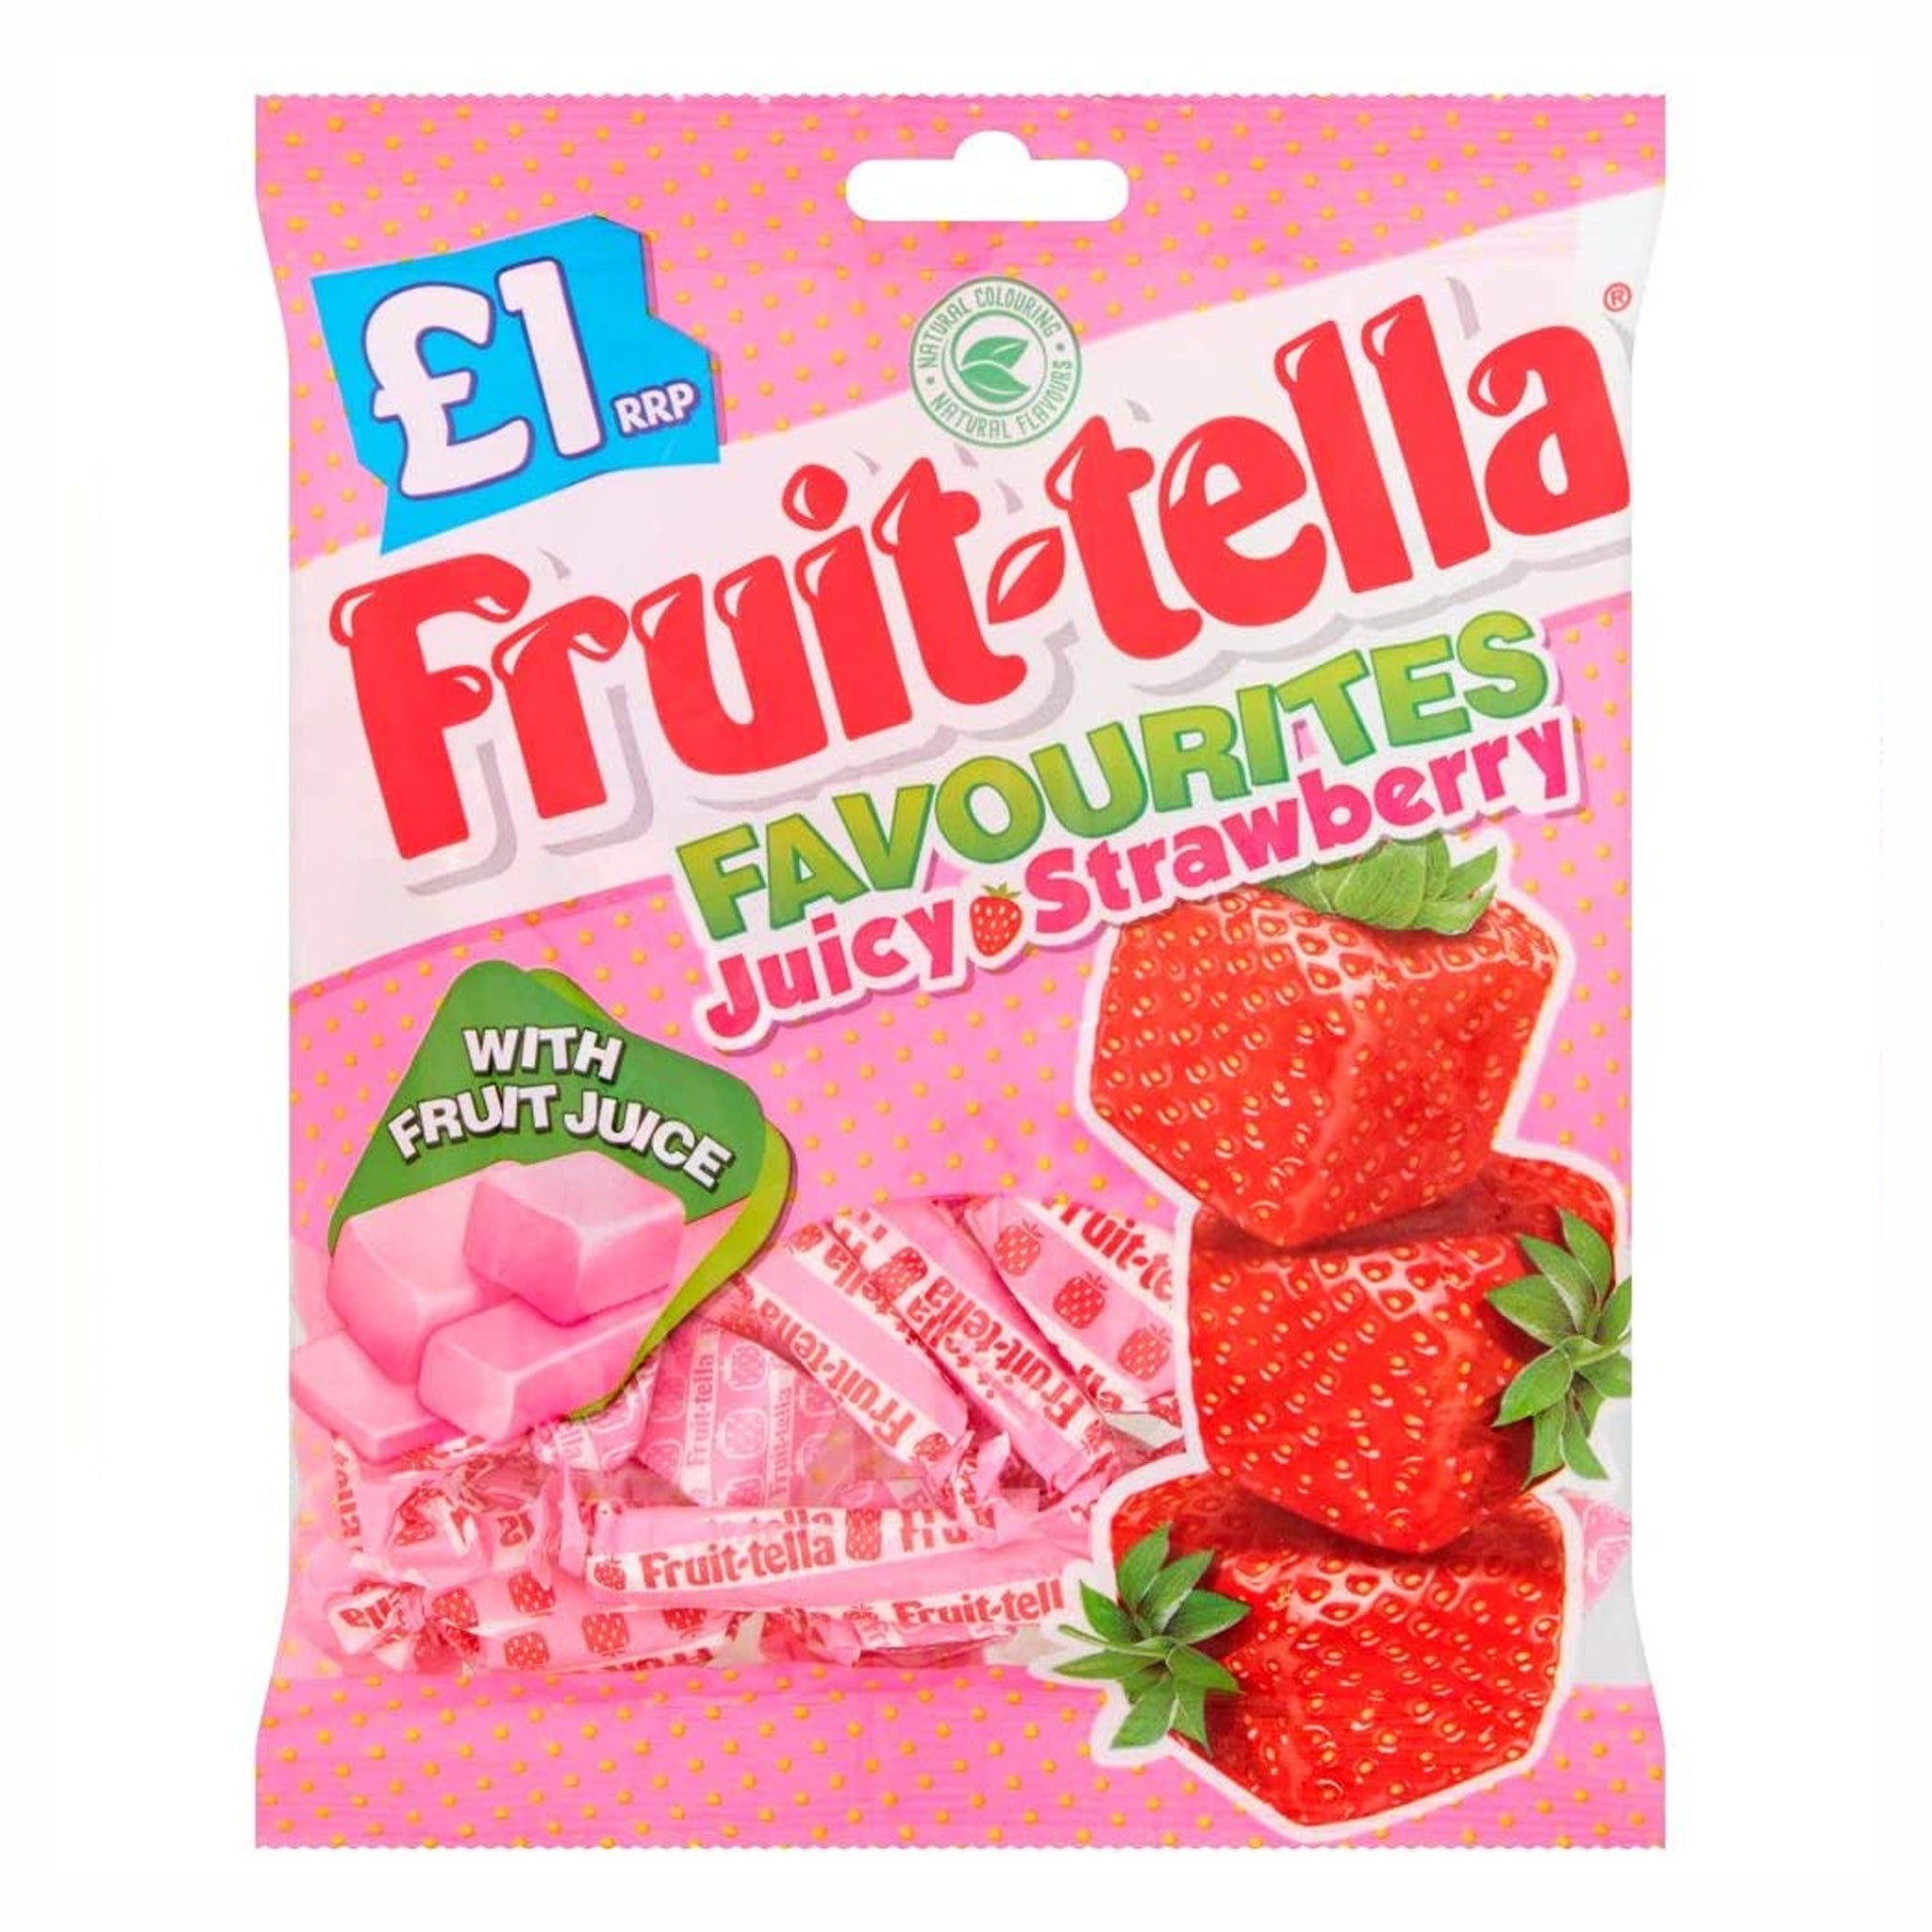 Fruit-tella Strawberry טופי בטעם תות